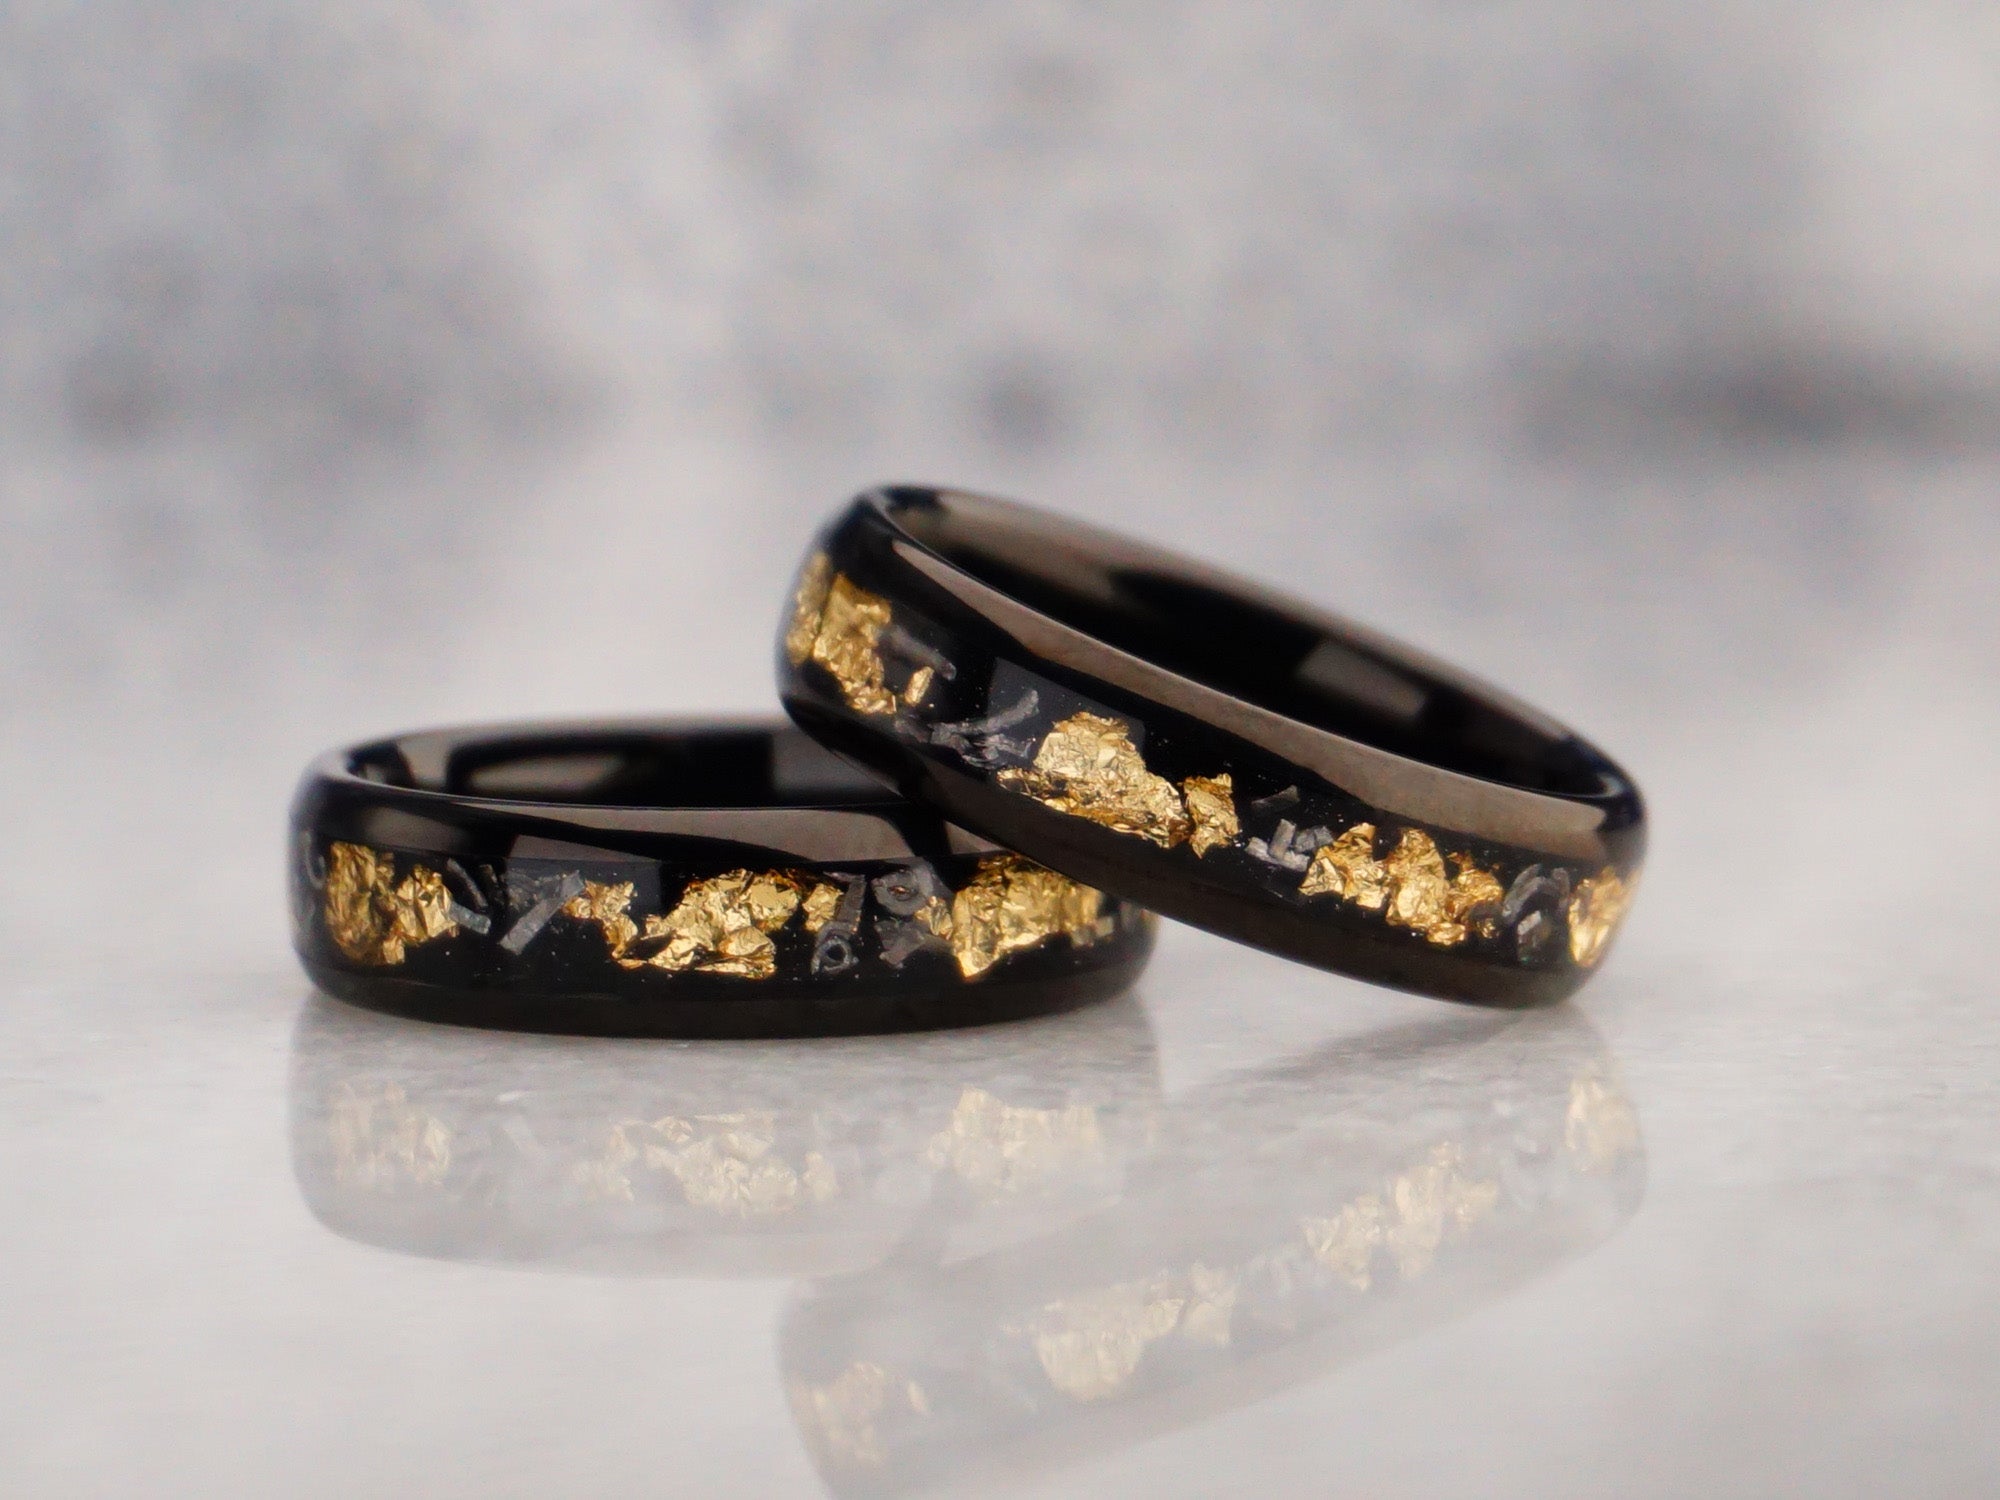 6mm gold leaf meteorite ring, polished black tungsten ring with meteorite metal and gold leaf inlay, modern mens wedding ring